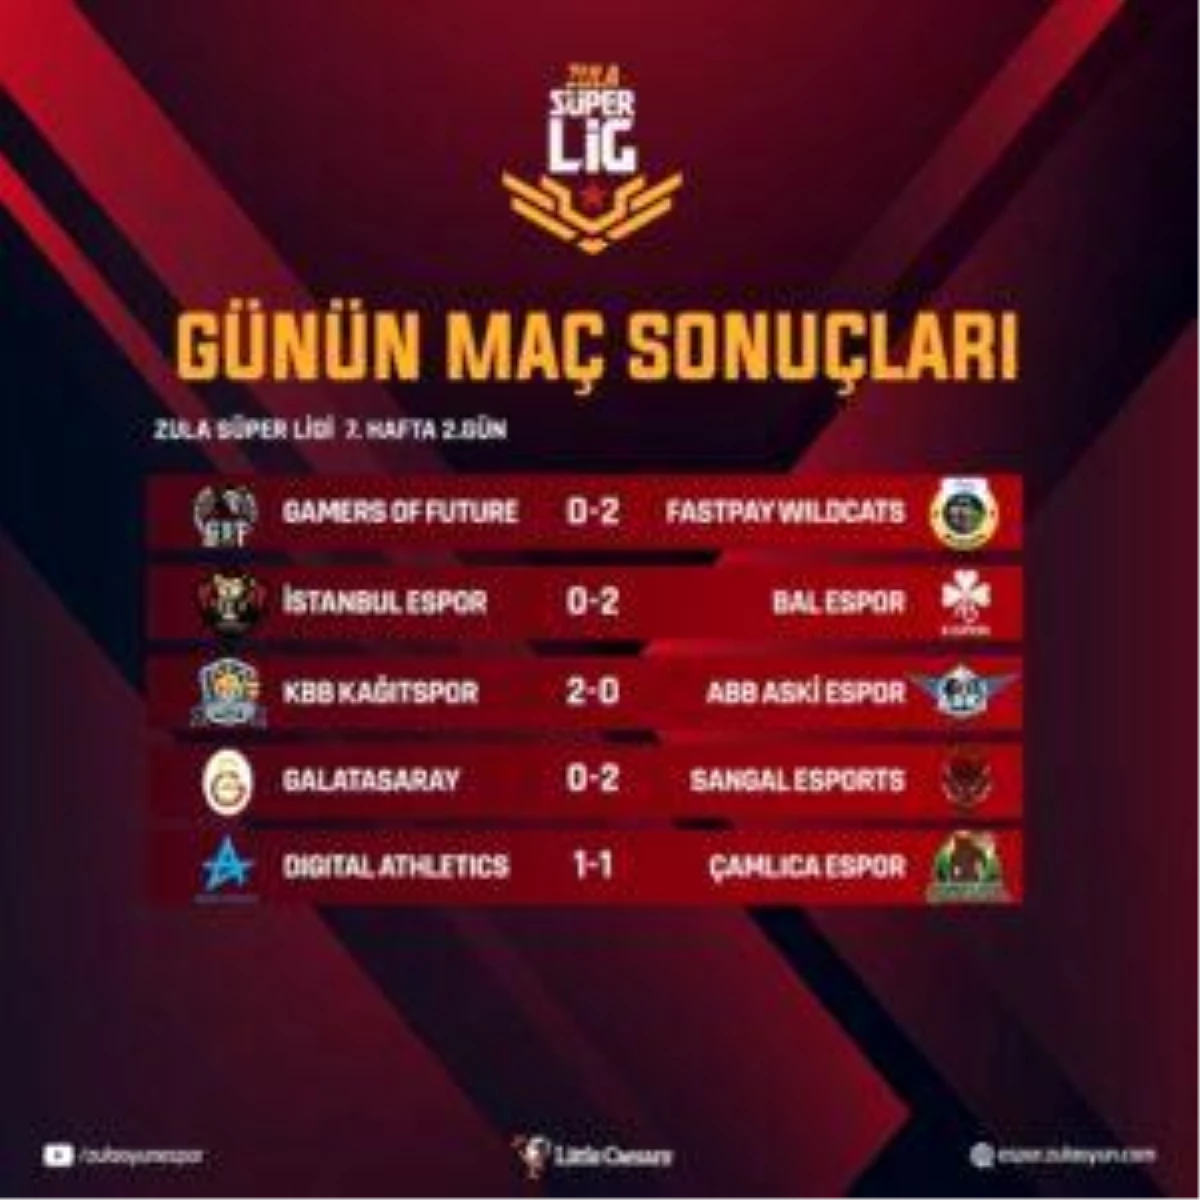 Zula Süper Lig Sezon 7 Hafta 7 Gün 2 maçları tamamlandı!